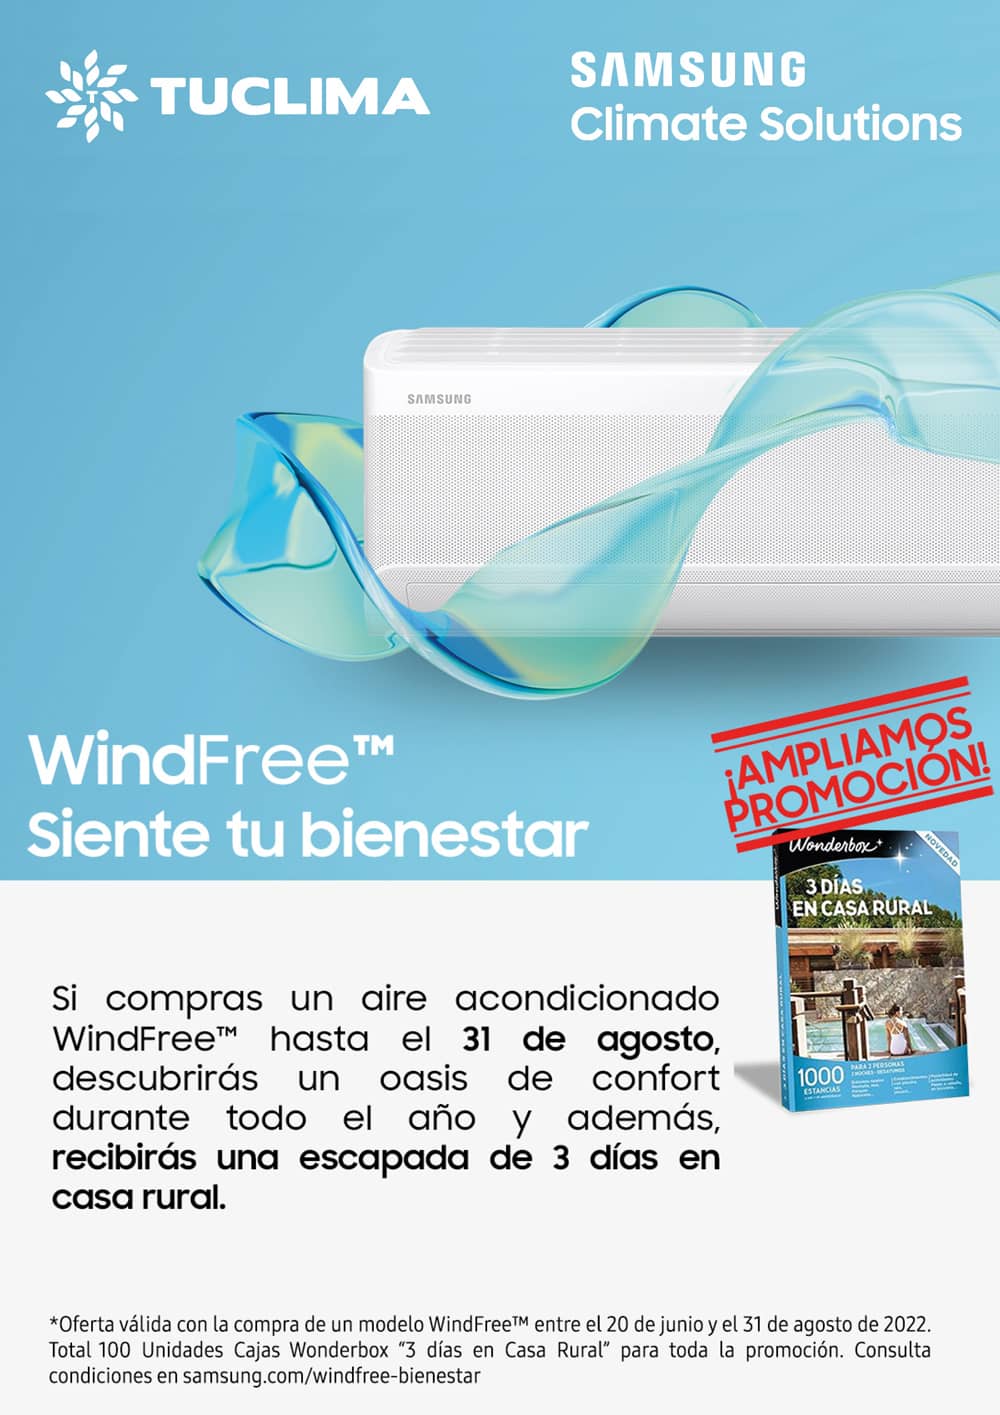 ¡Ampliamos la promoción WindFree de Samsung!